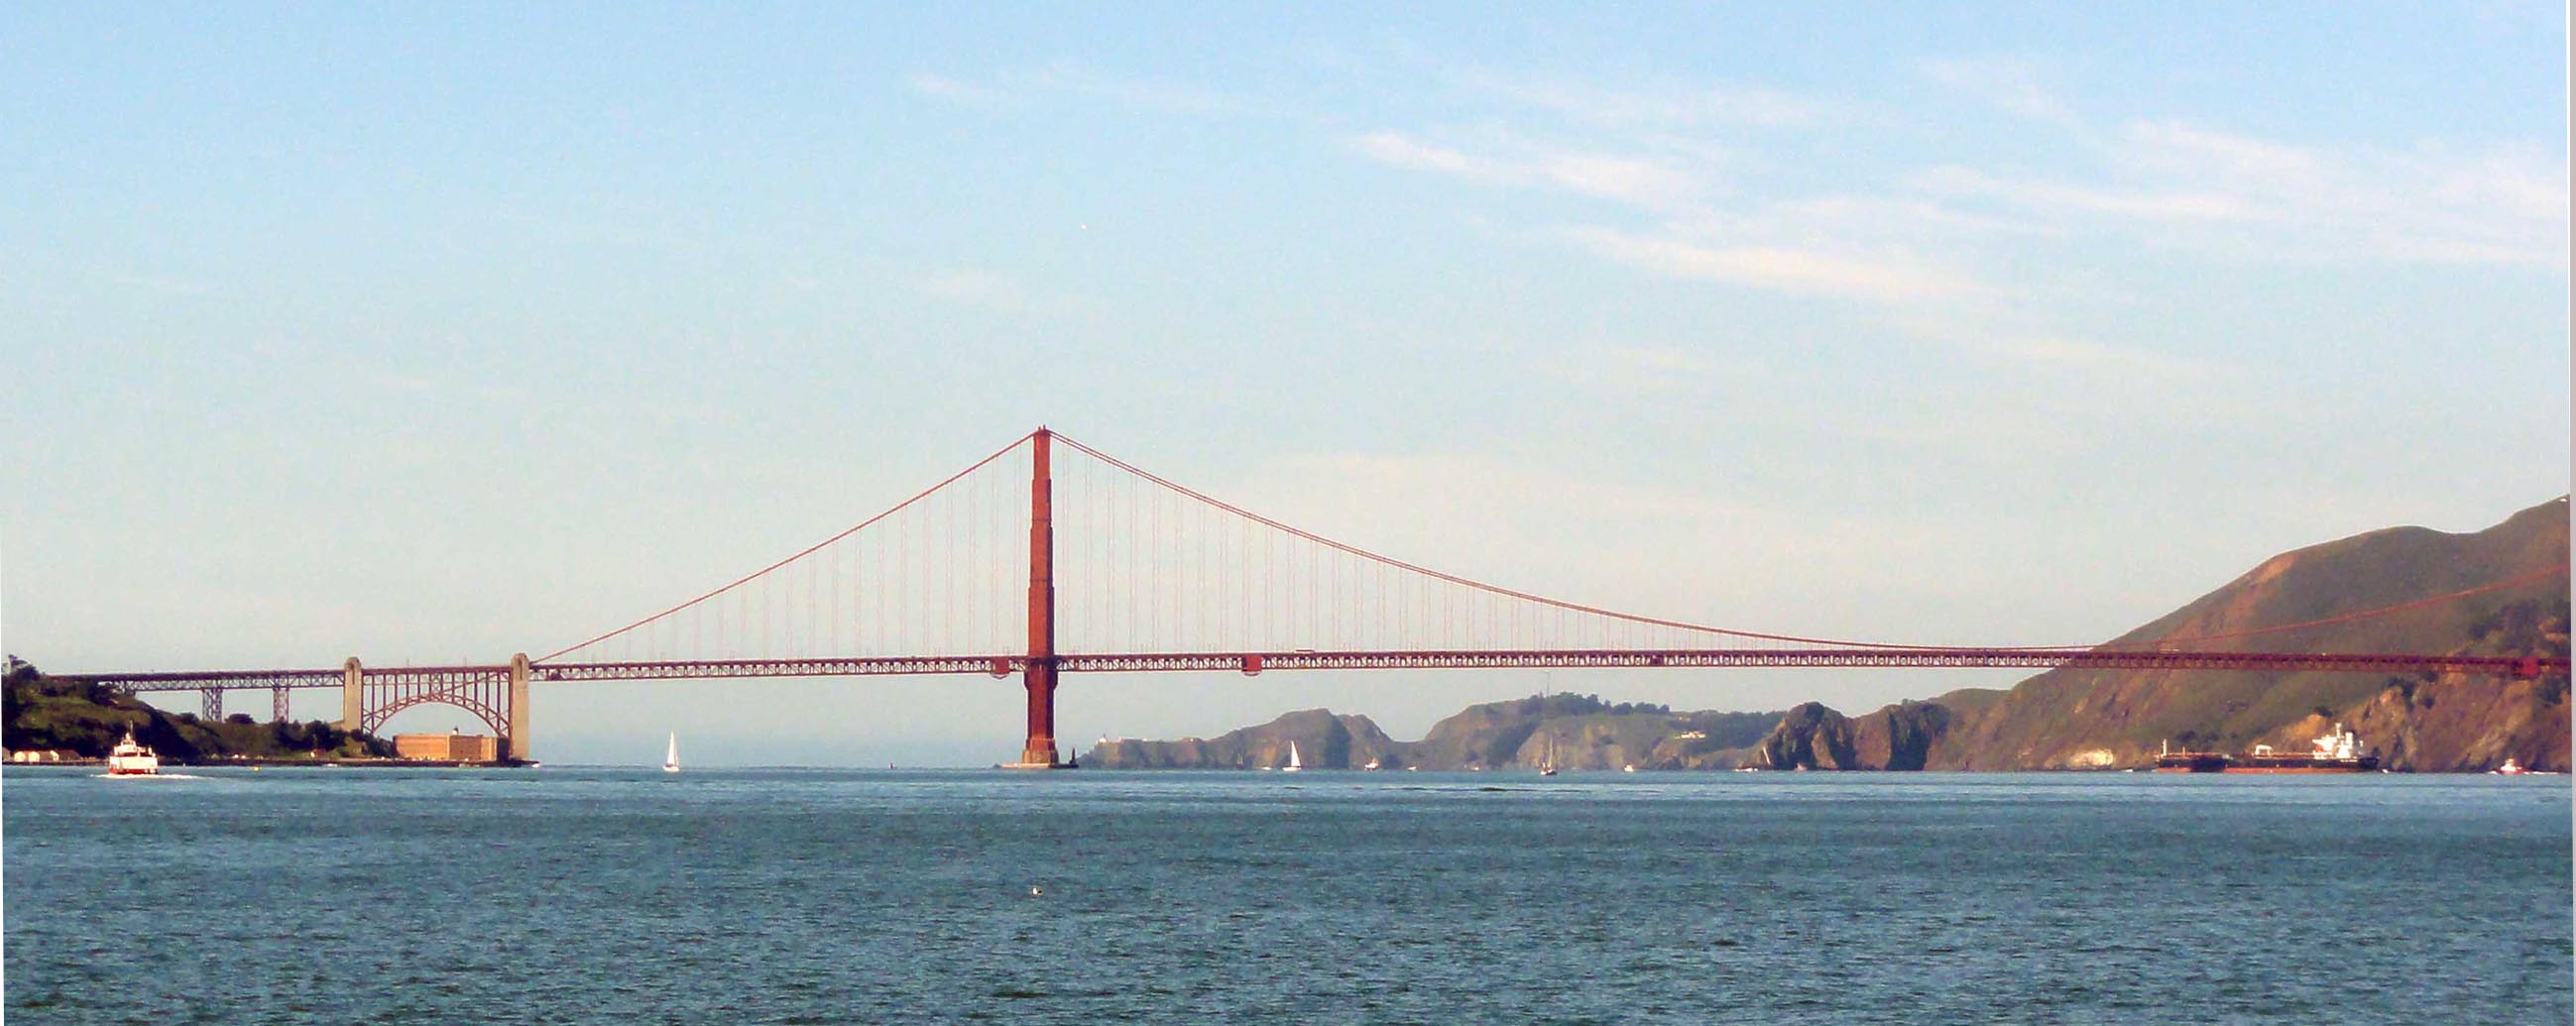 Golden Gate Bridge, pont suspendu en acier, inauguré en 1937 après quatre ans de travaux